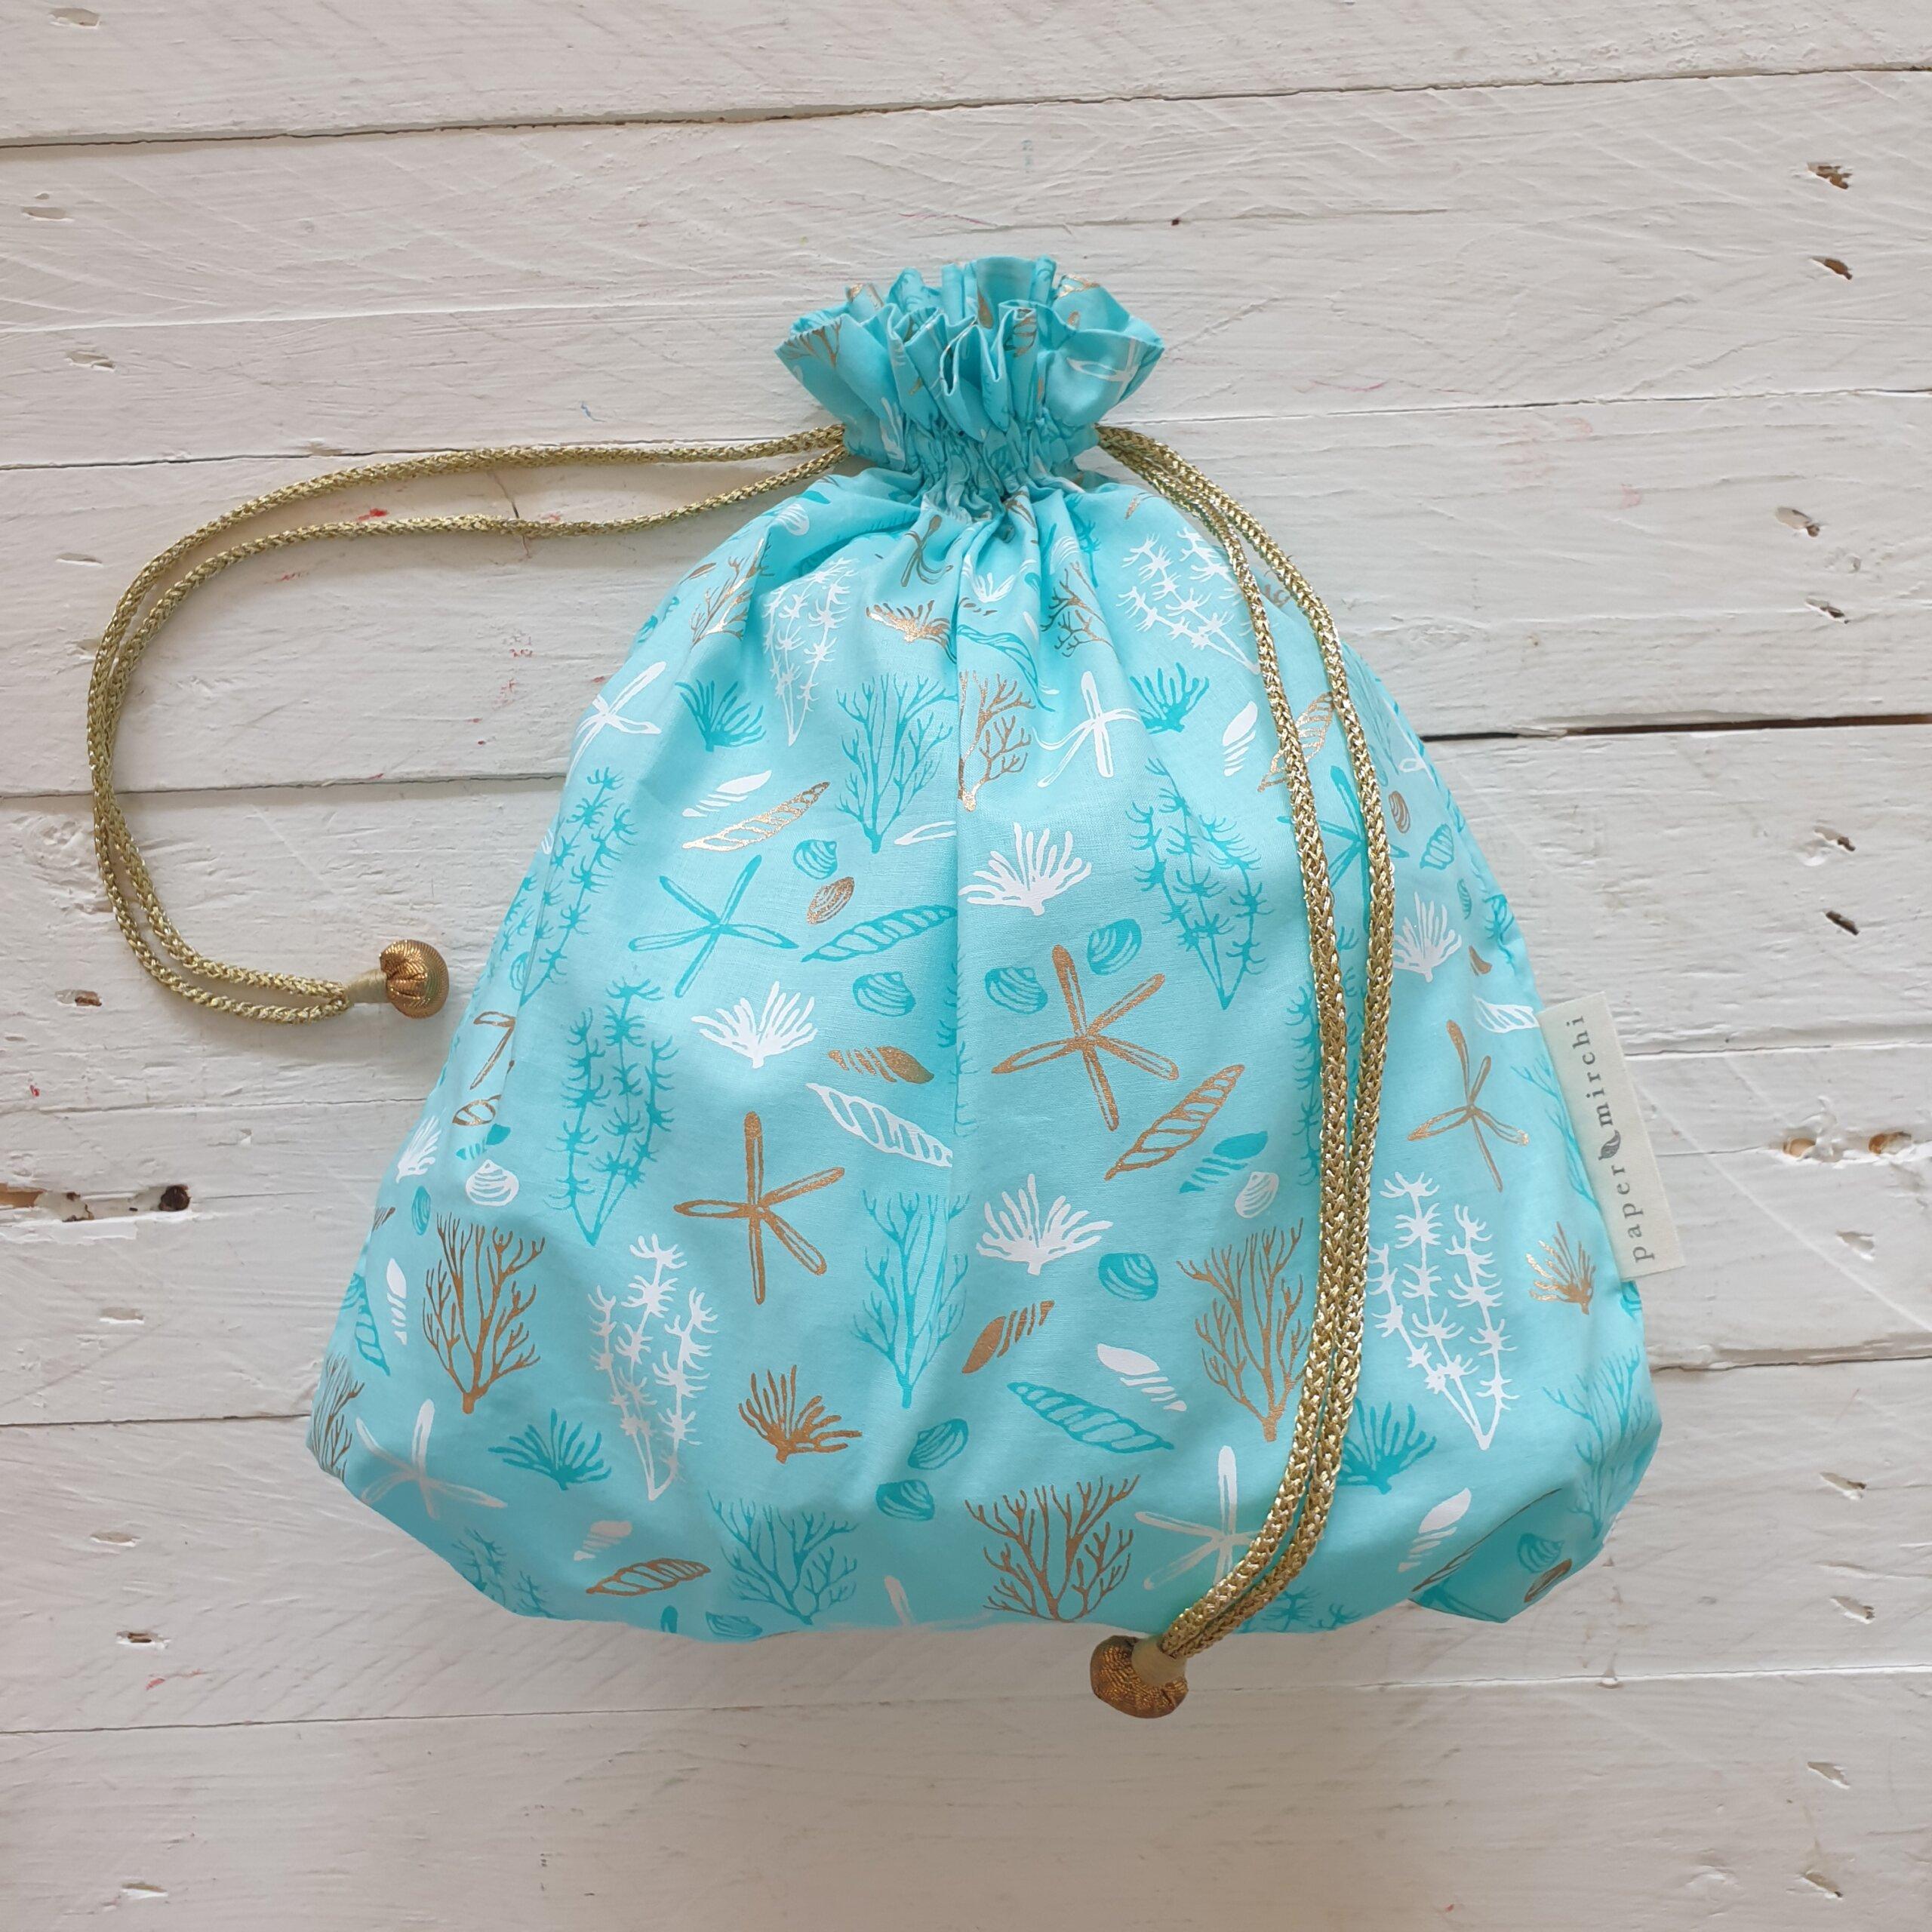 Sea Life Fabric Gift Bag - Large